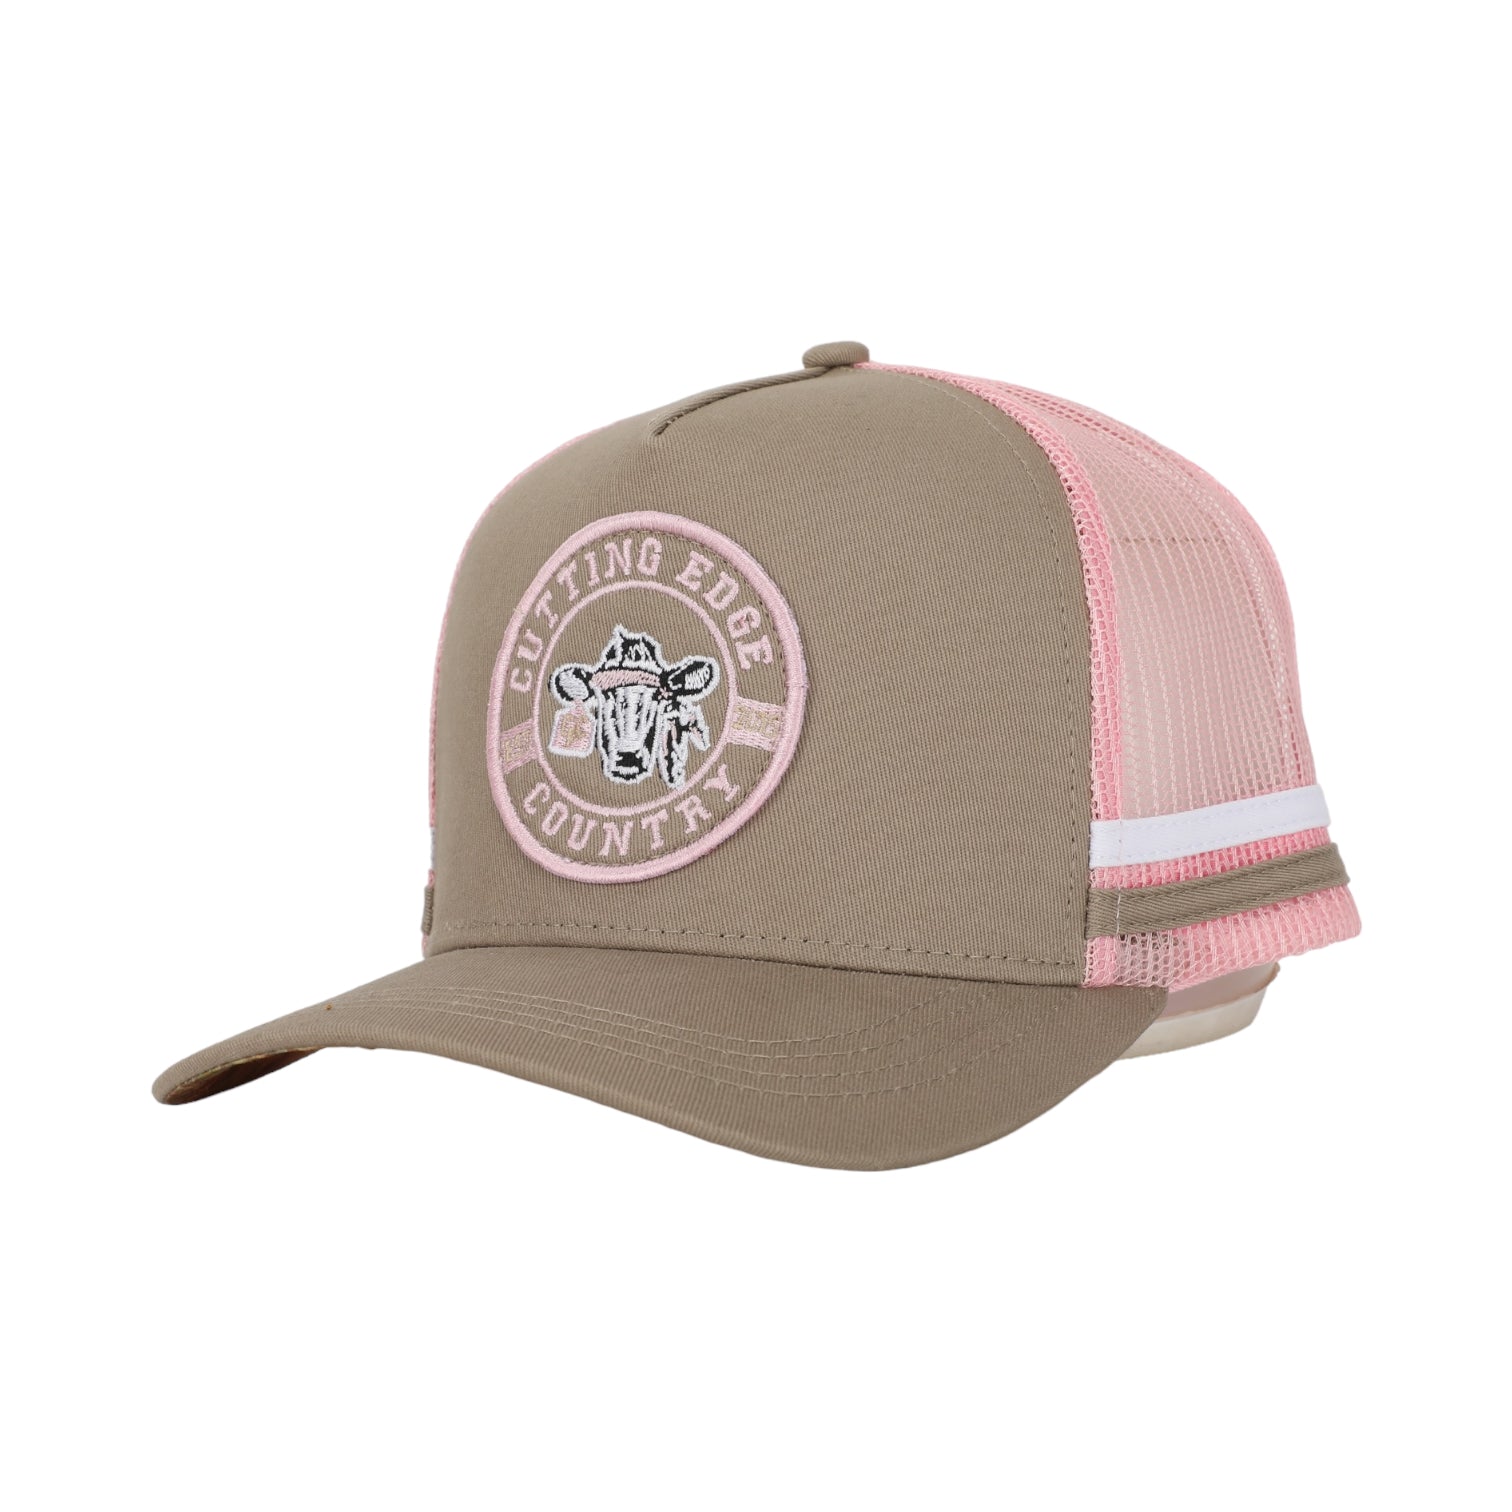 Beige & Pink Trucker Cap